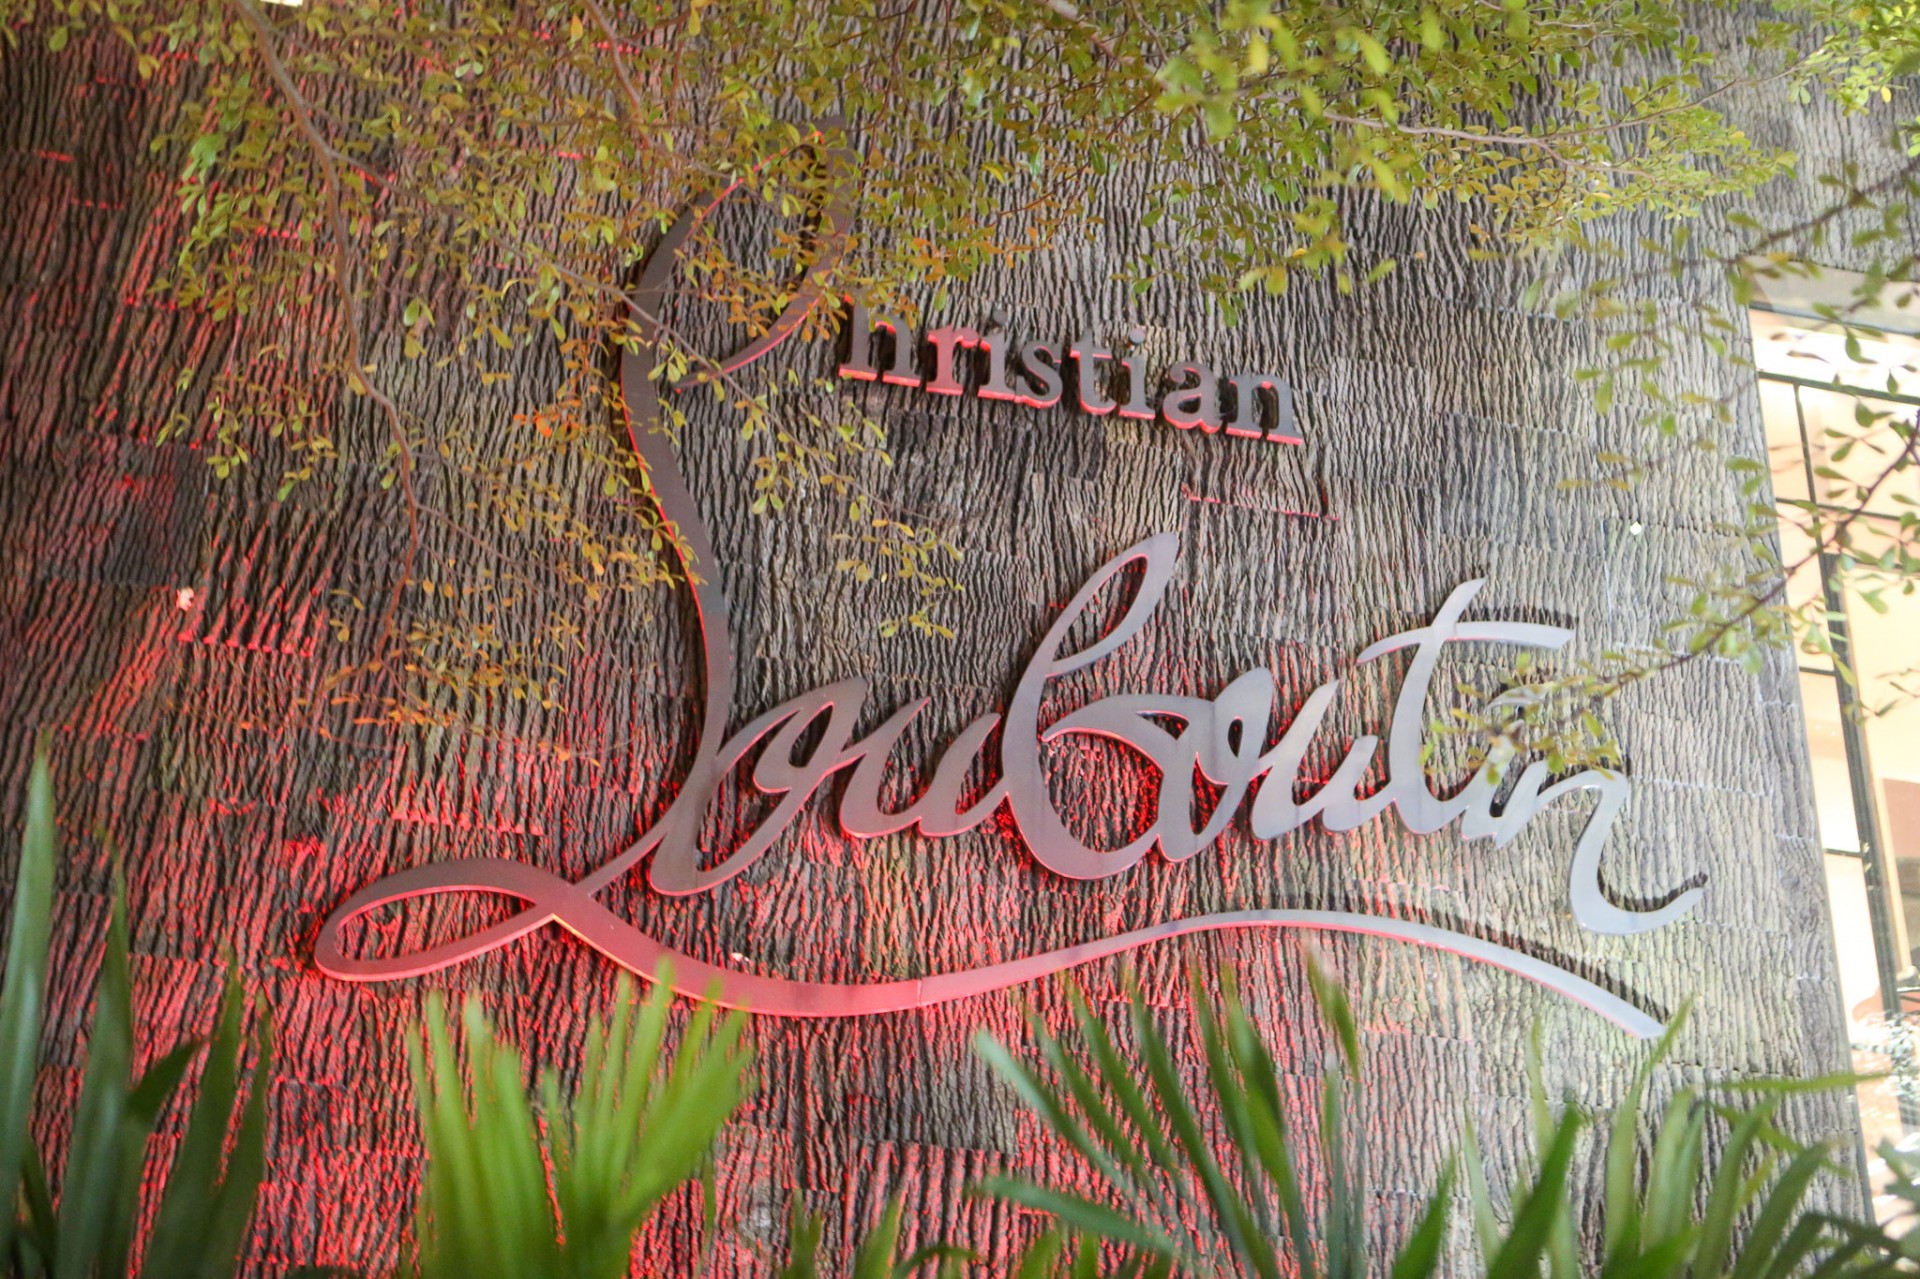 Christian Louboutin store in Miami, Florida